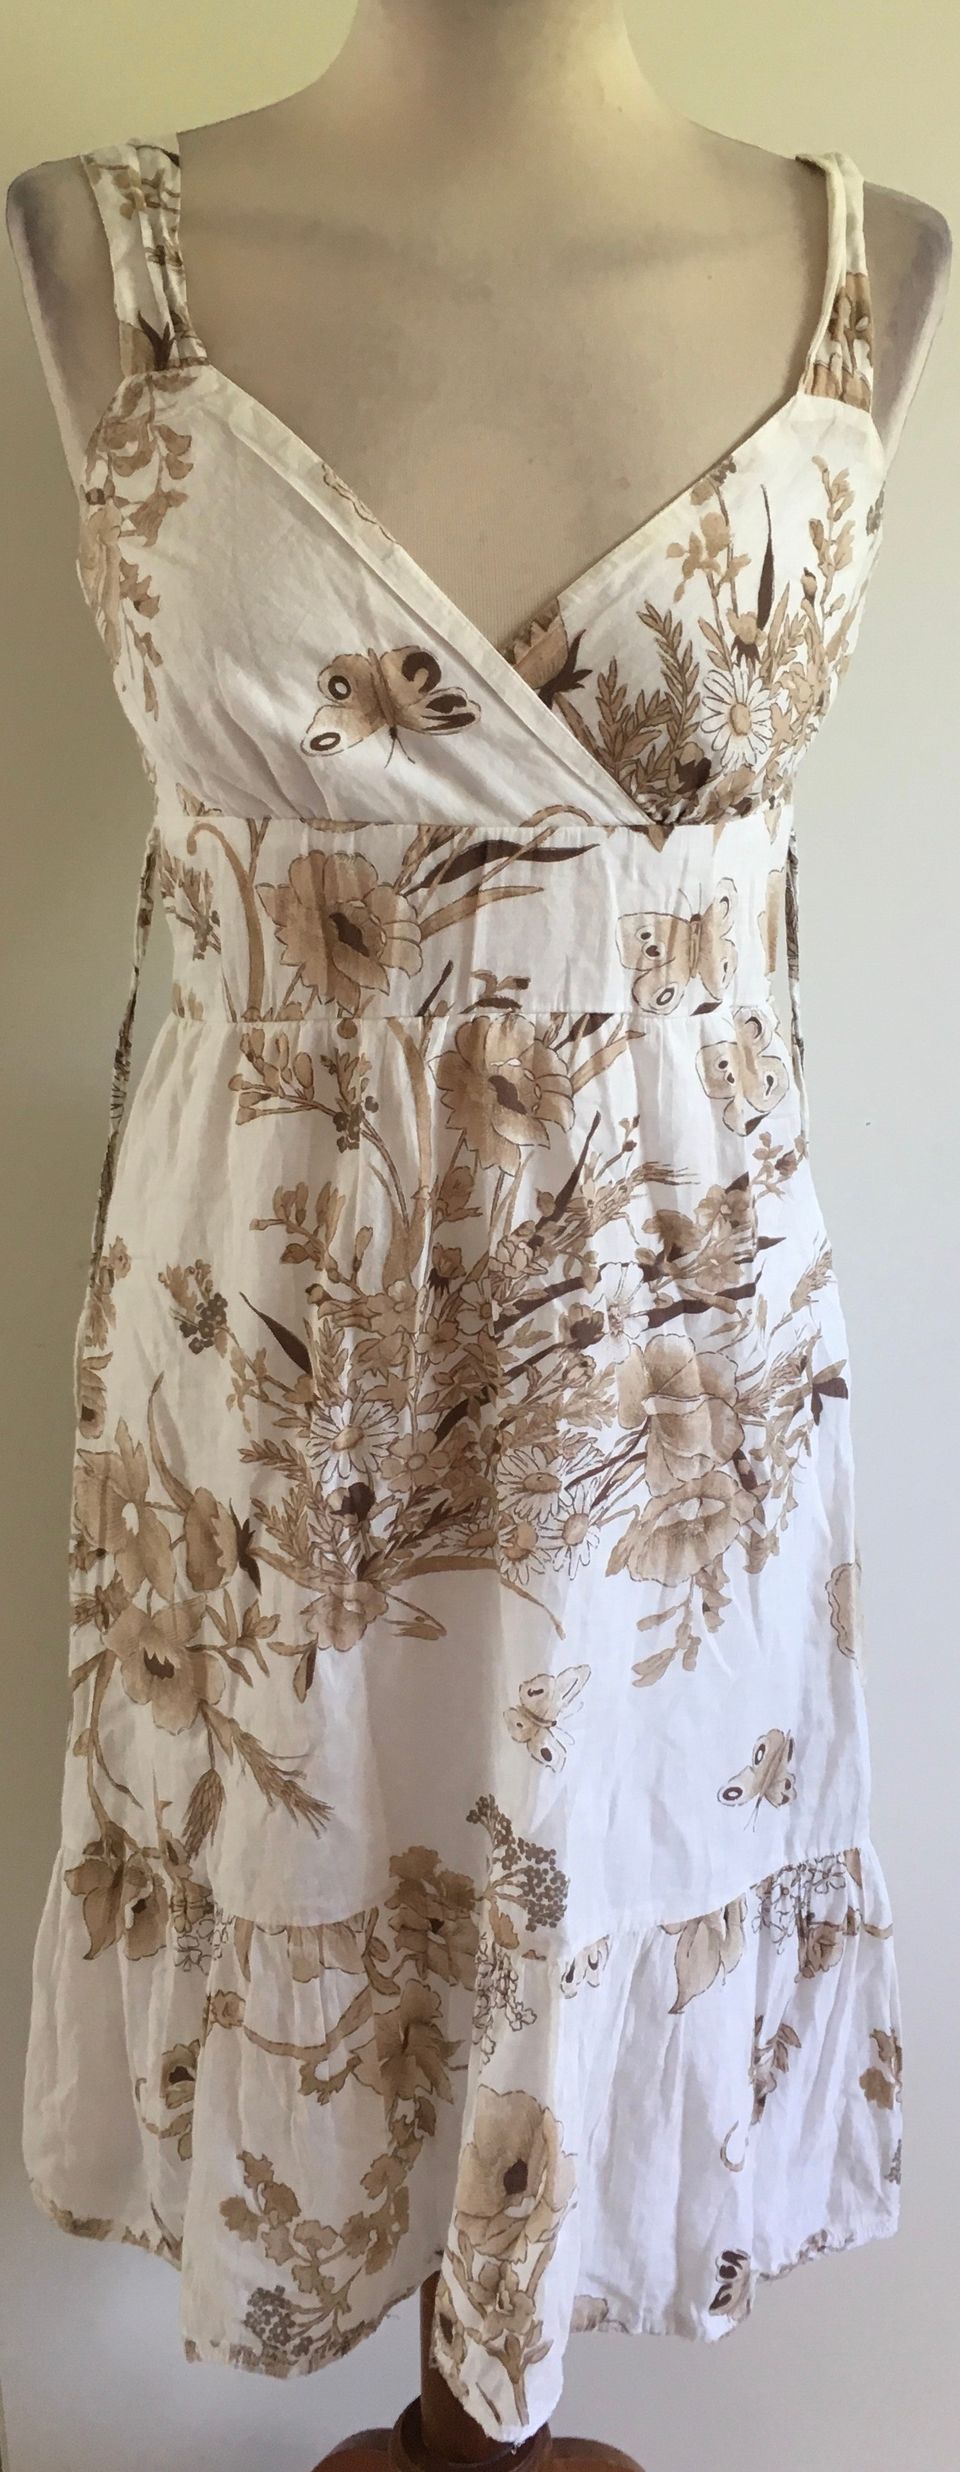 Vero moda kaunis valkoinen mekko kukkamekko 36